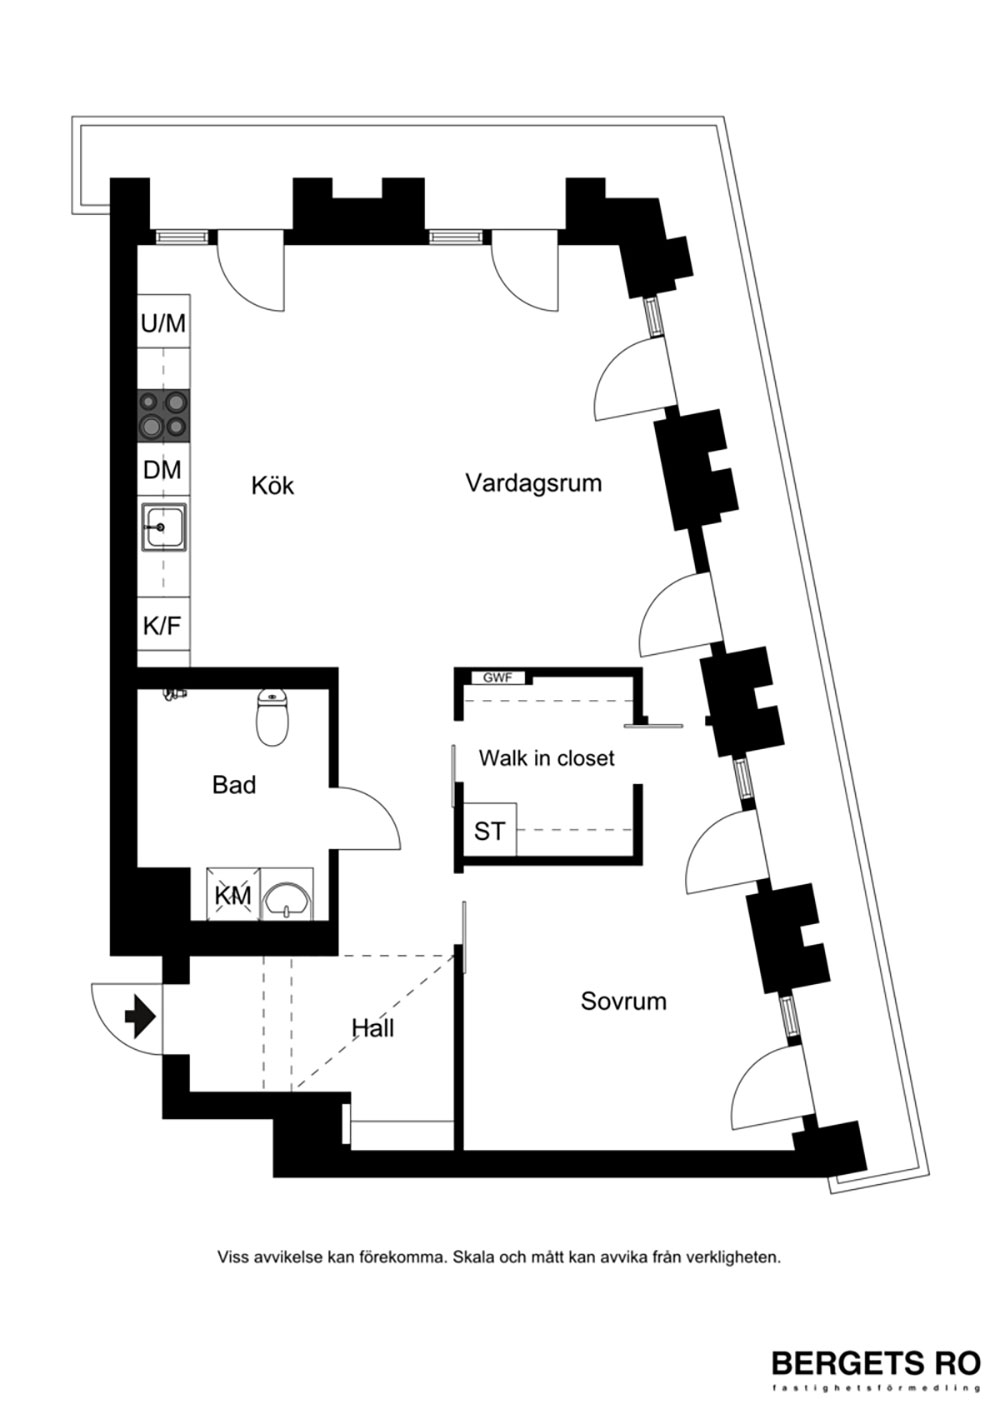 住宅设计,公寓设计,小户型设计,50㎡公寓设计,公寓设计案例,公寓设计方案,bergetsro,斯德哥尔摩